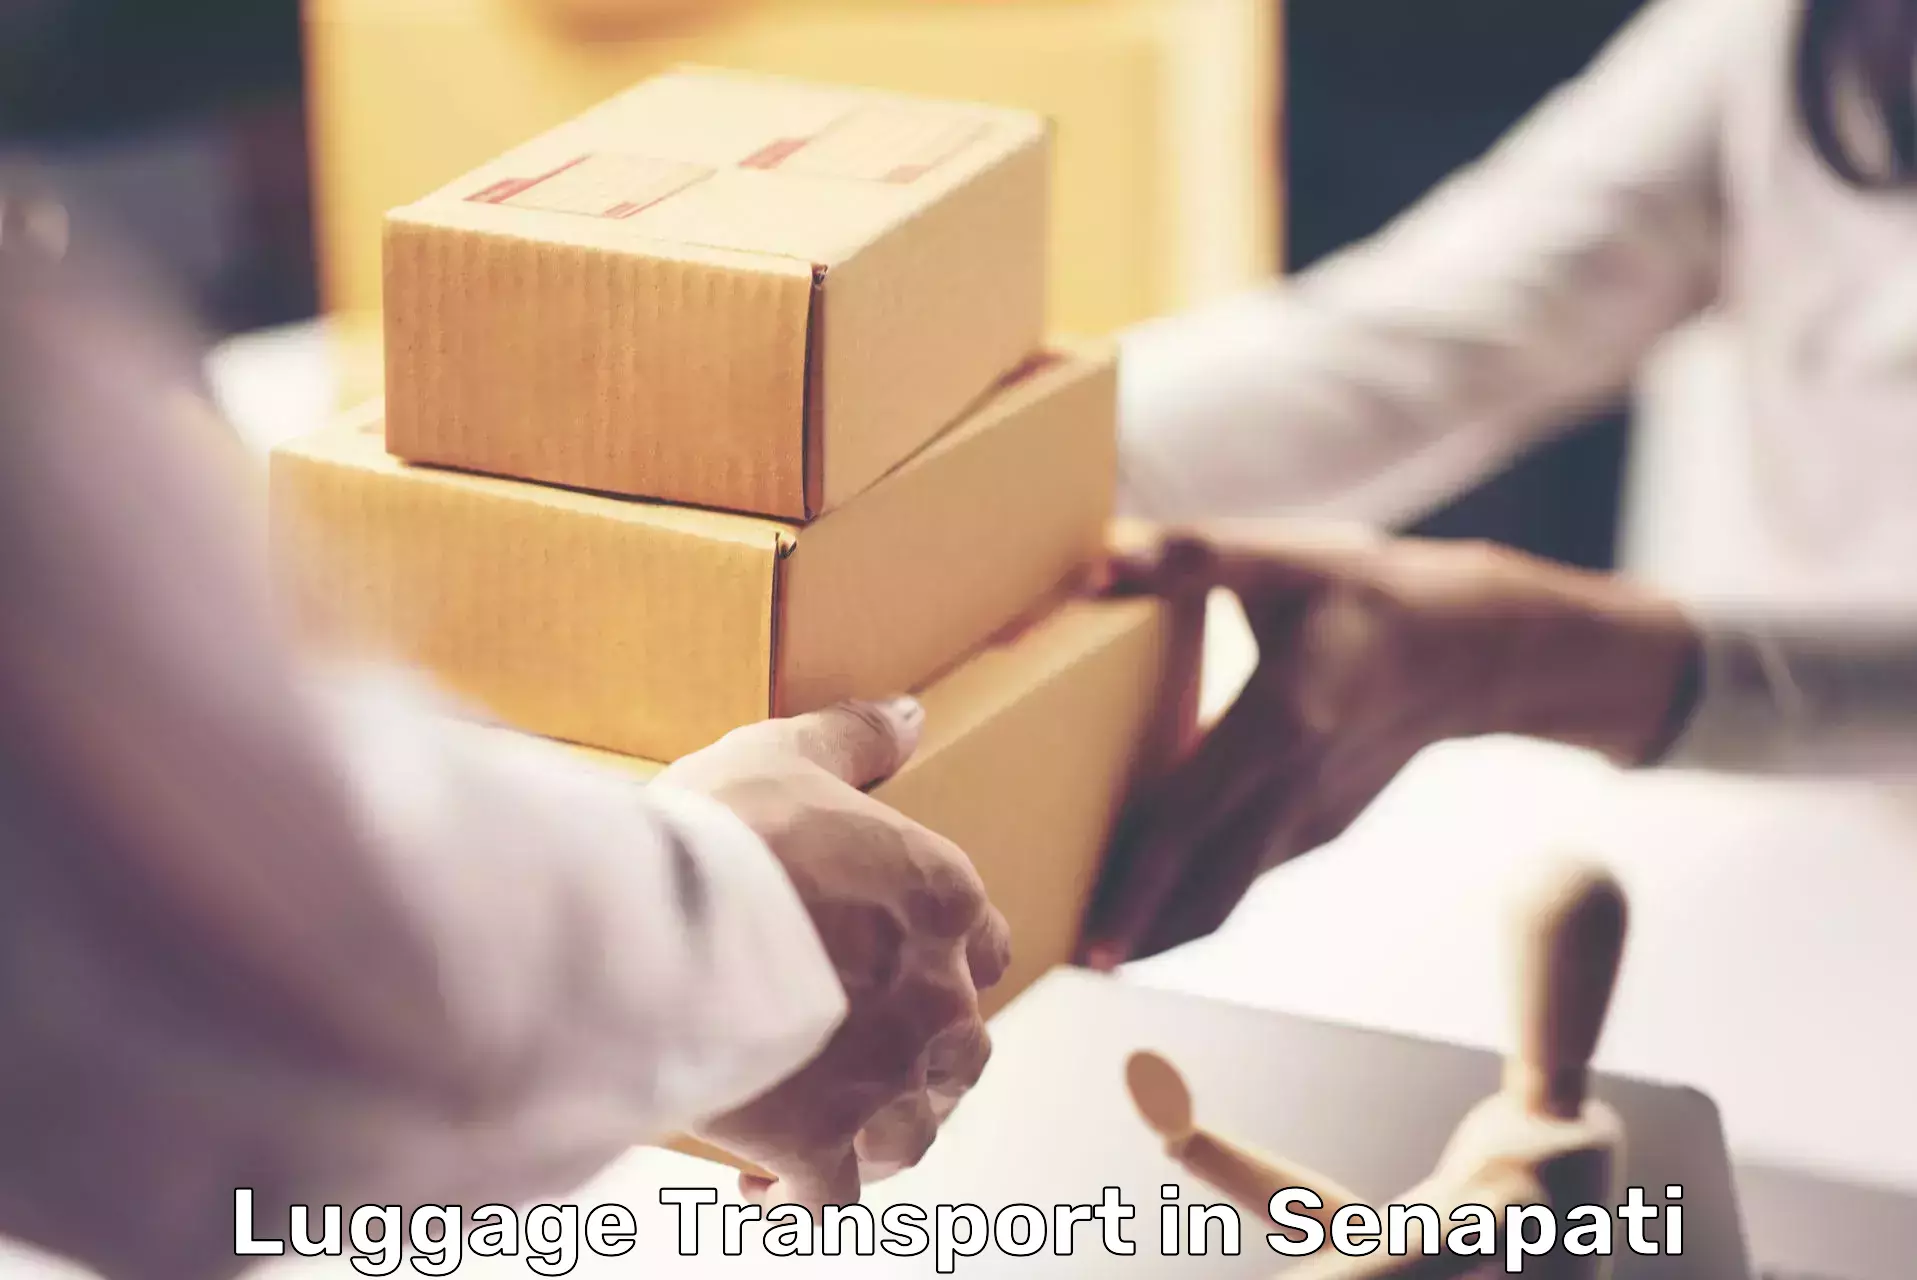 Luggage transport service in Senapati